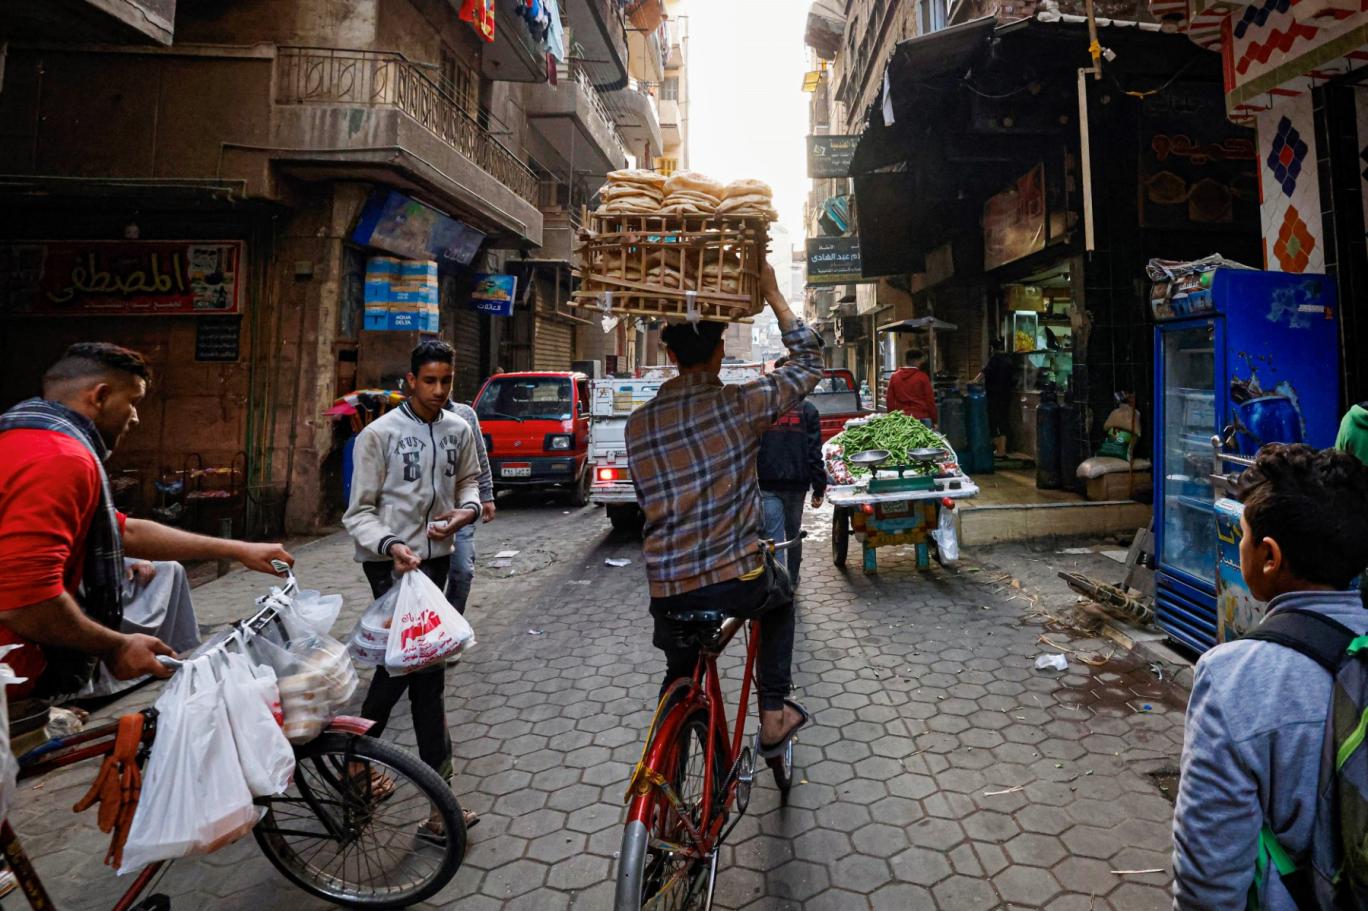 مصر تتوقع ارتفاع عجز الموازنة لأعلى مستوى في 5 سنوات | اندبندنت عربية